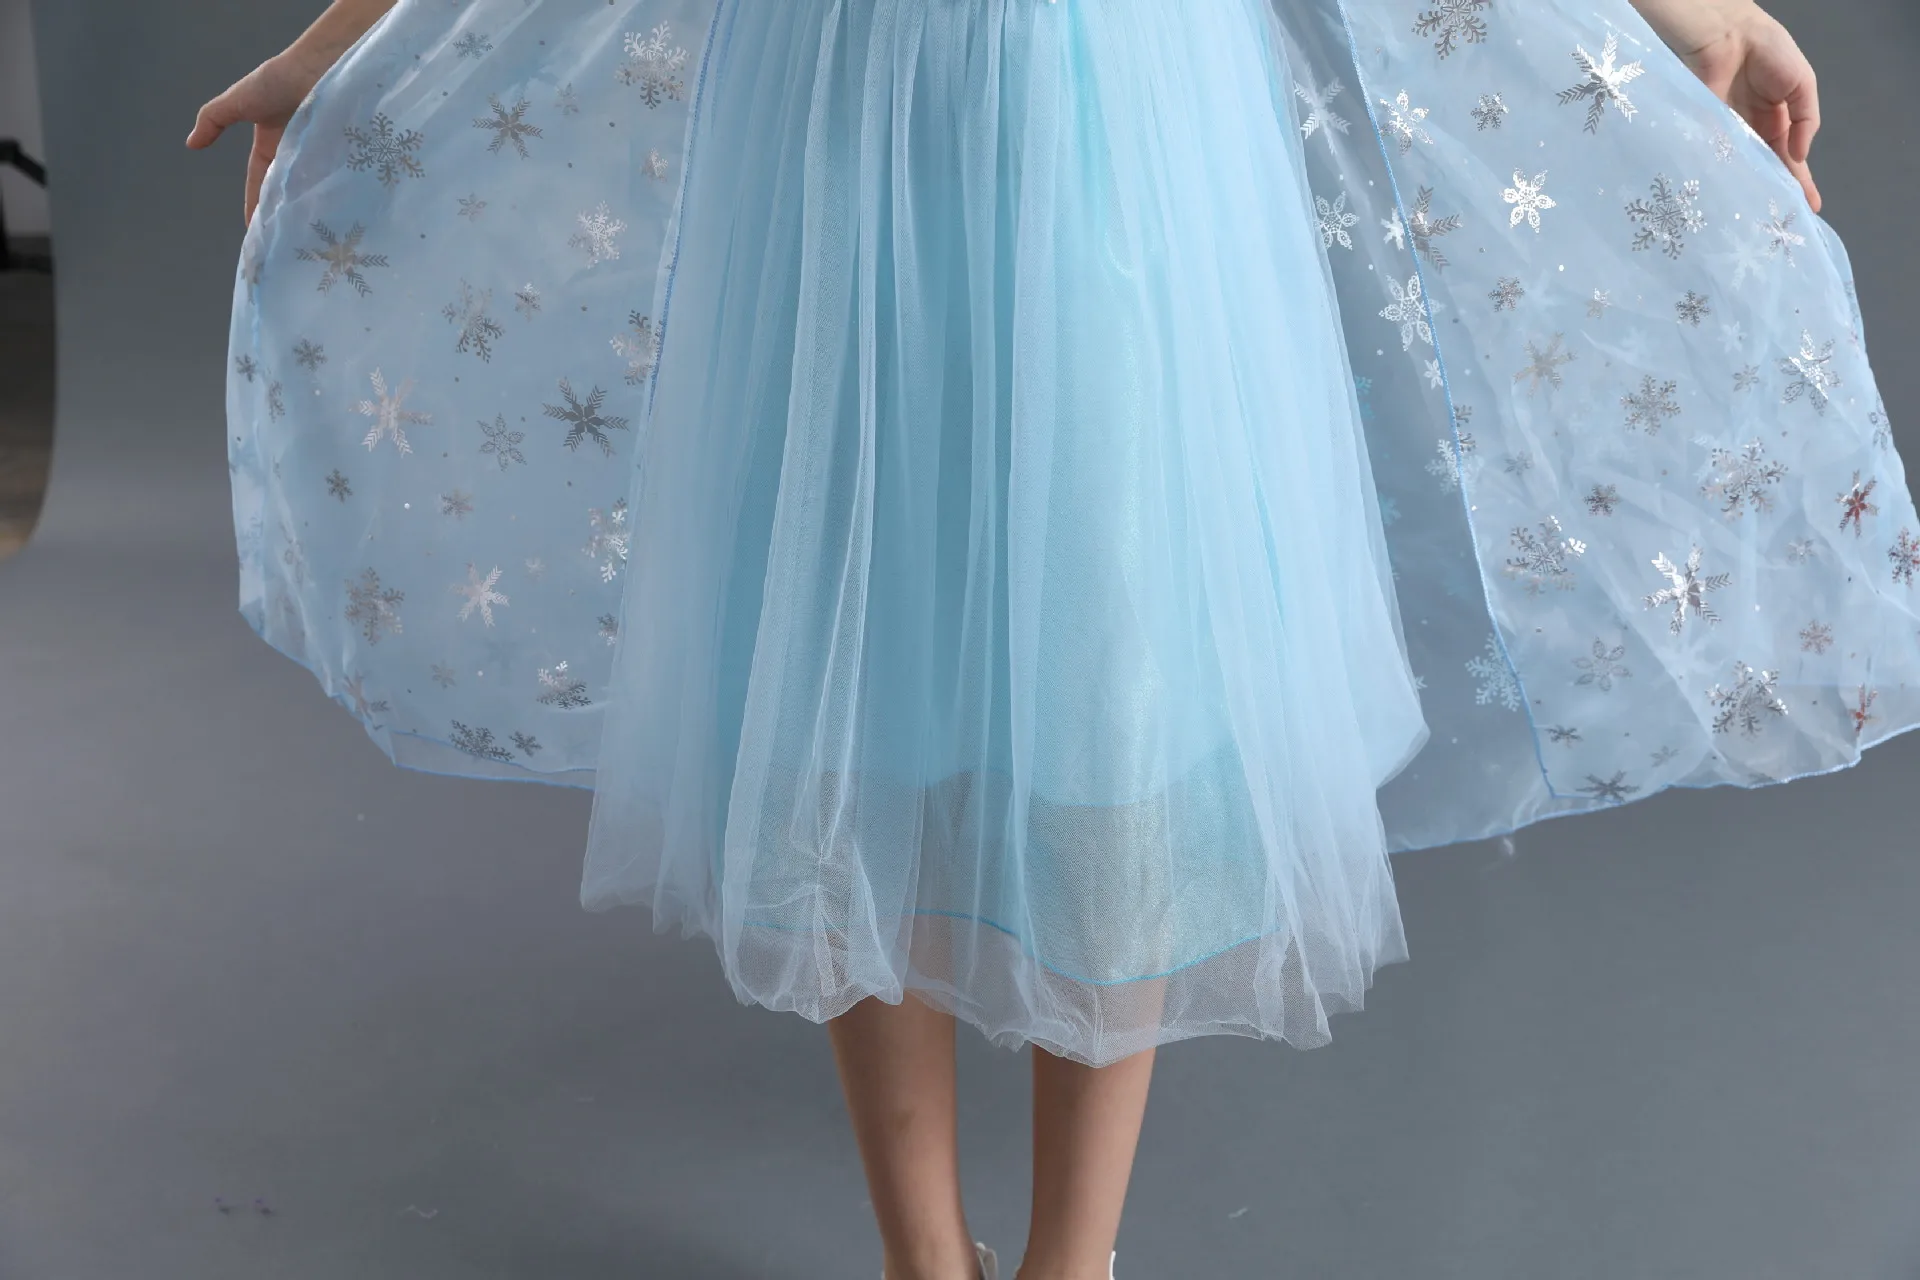 Детские платья для девочек с изображением героев мультфильма «Холодное сердце»; костюм Эльзы; платье принцессы на Хеллоуин, Рождество, вечеринку; элегантная детская одежда на год